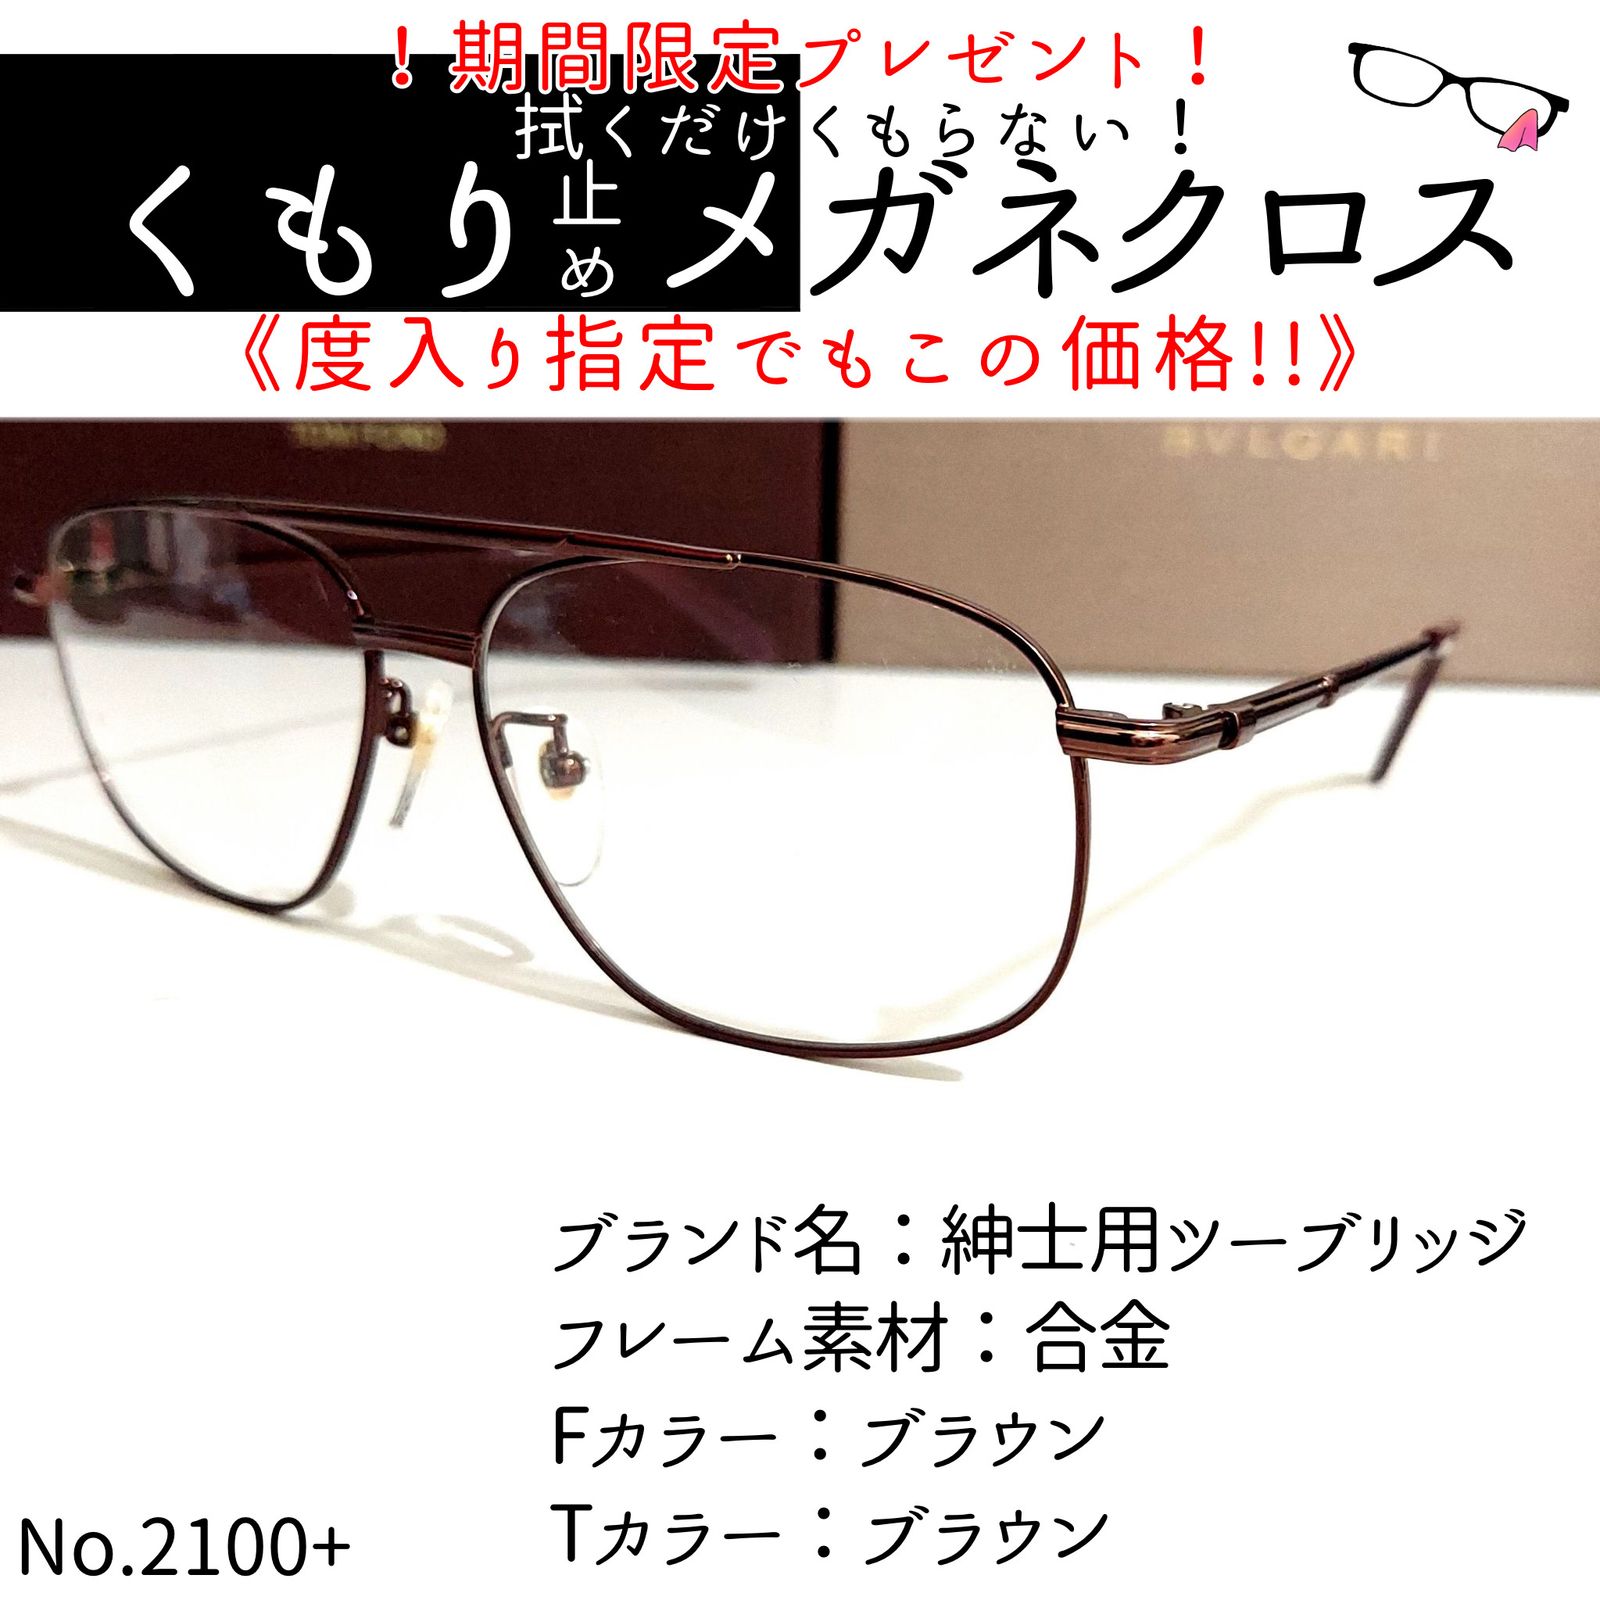 No.2100+メガネ 紳士用ツーブリッジ【度数入り込み価格】 - スッキリ